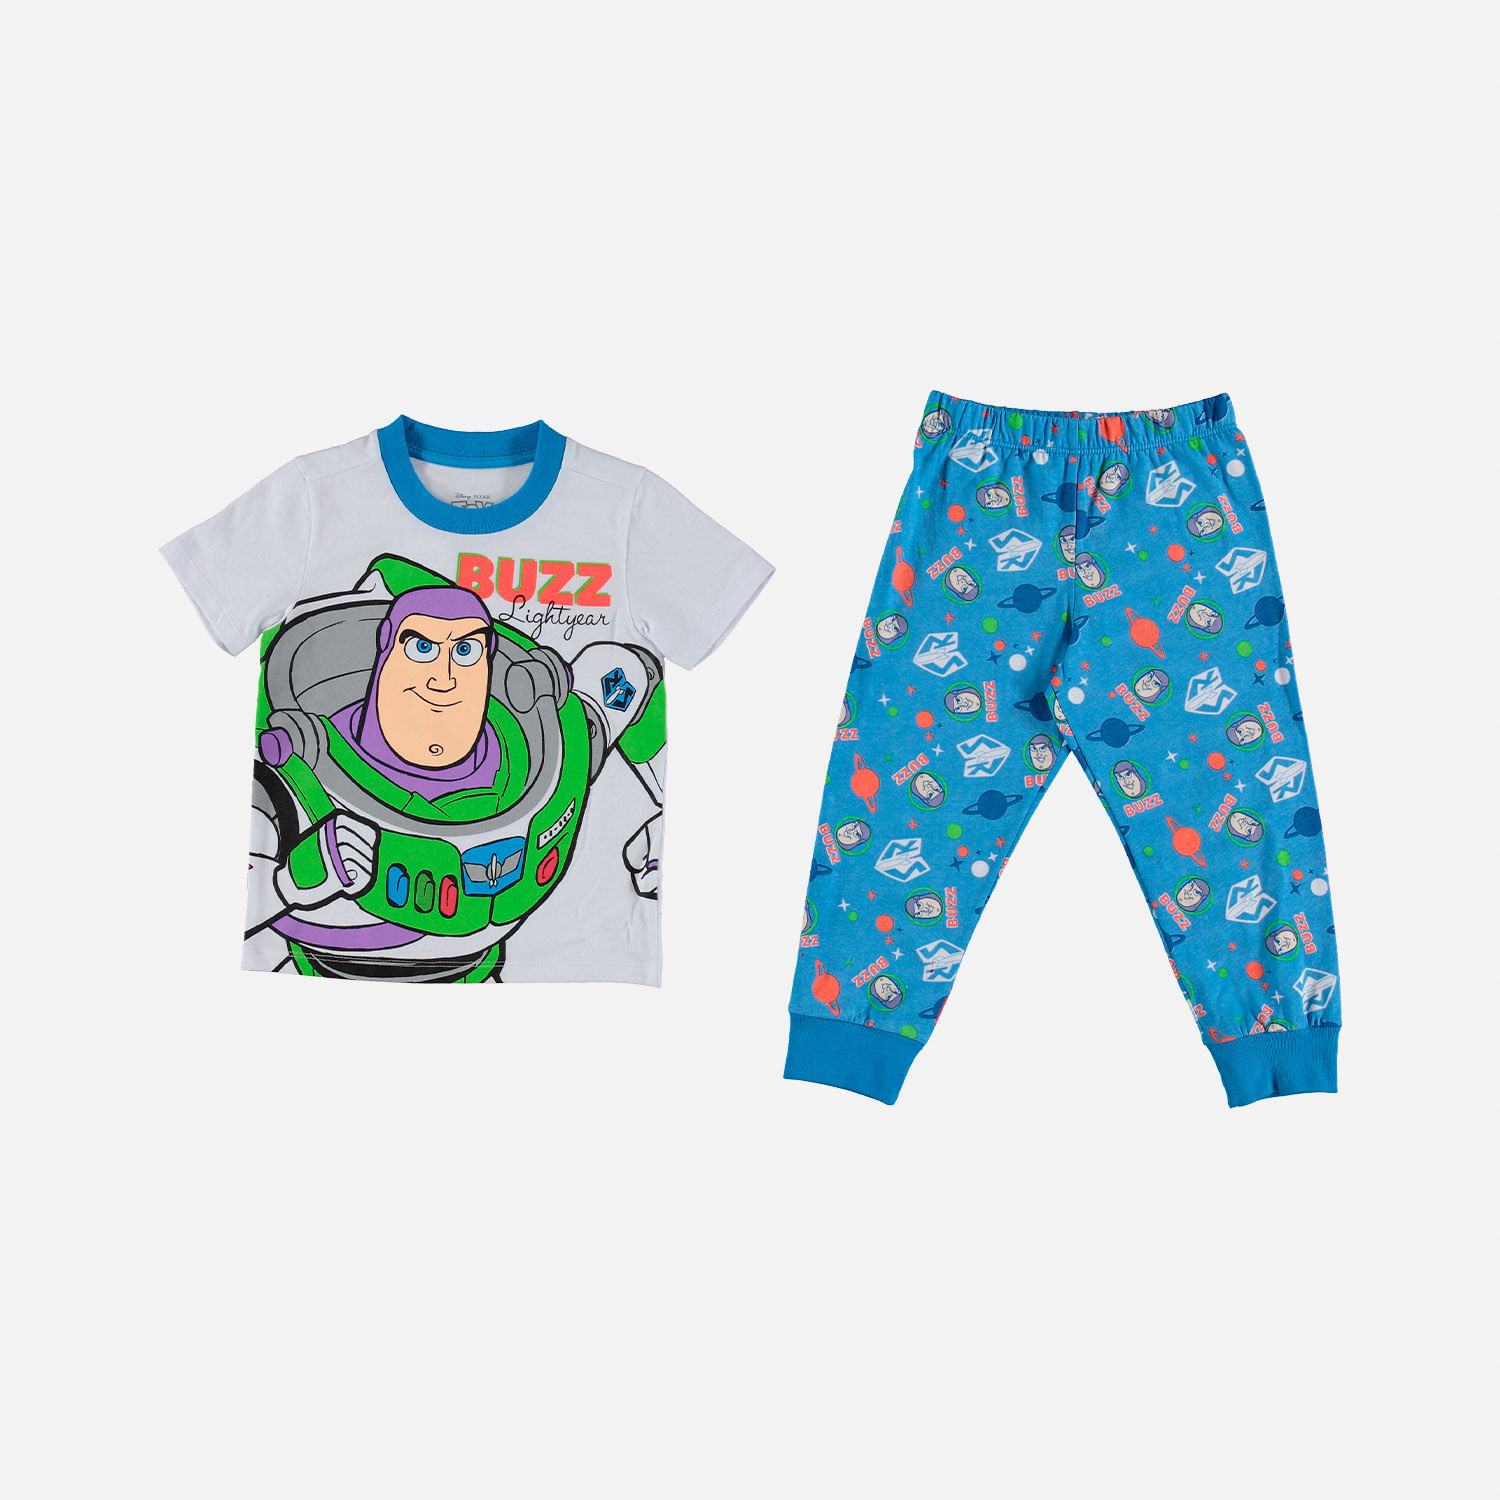 Pijama de niño, manga corto de Buzz